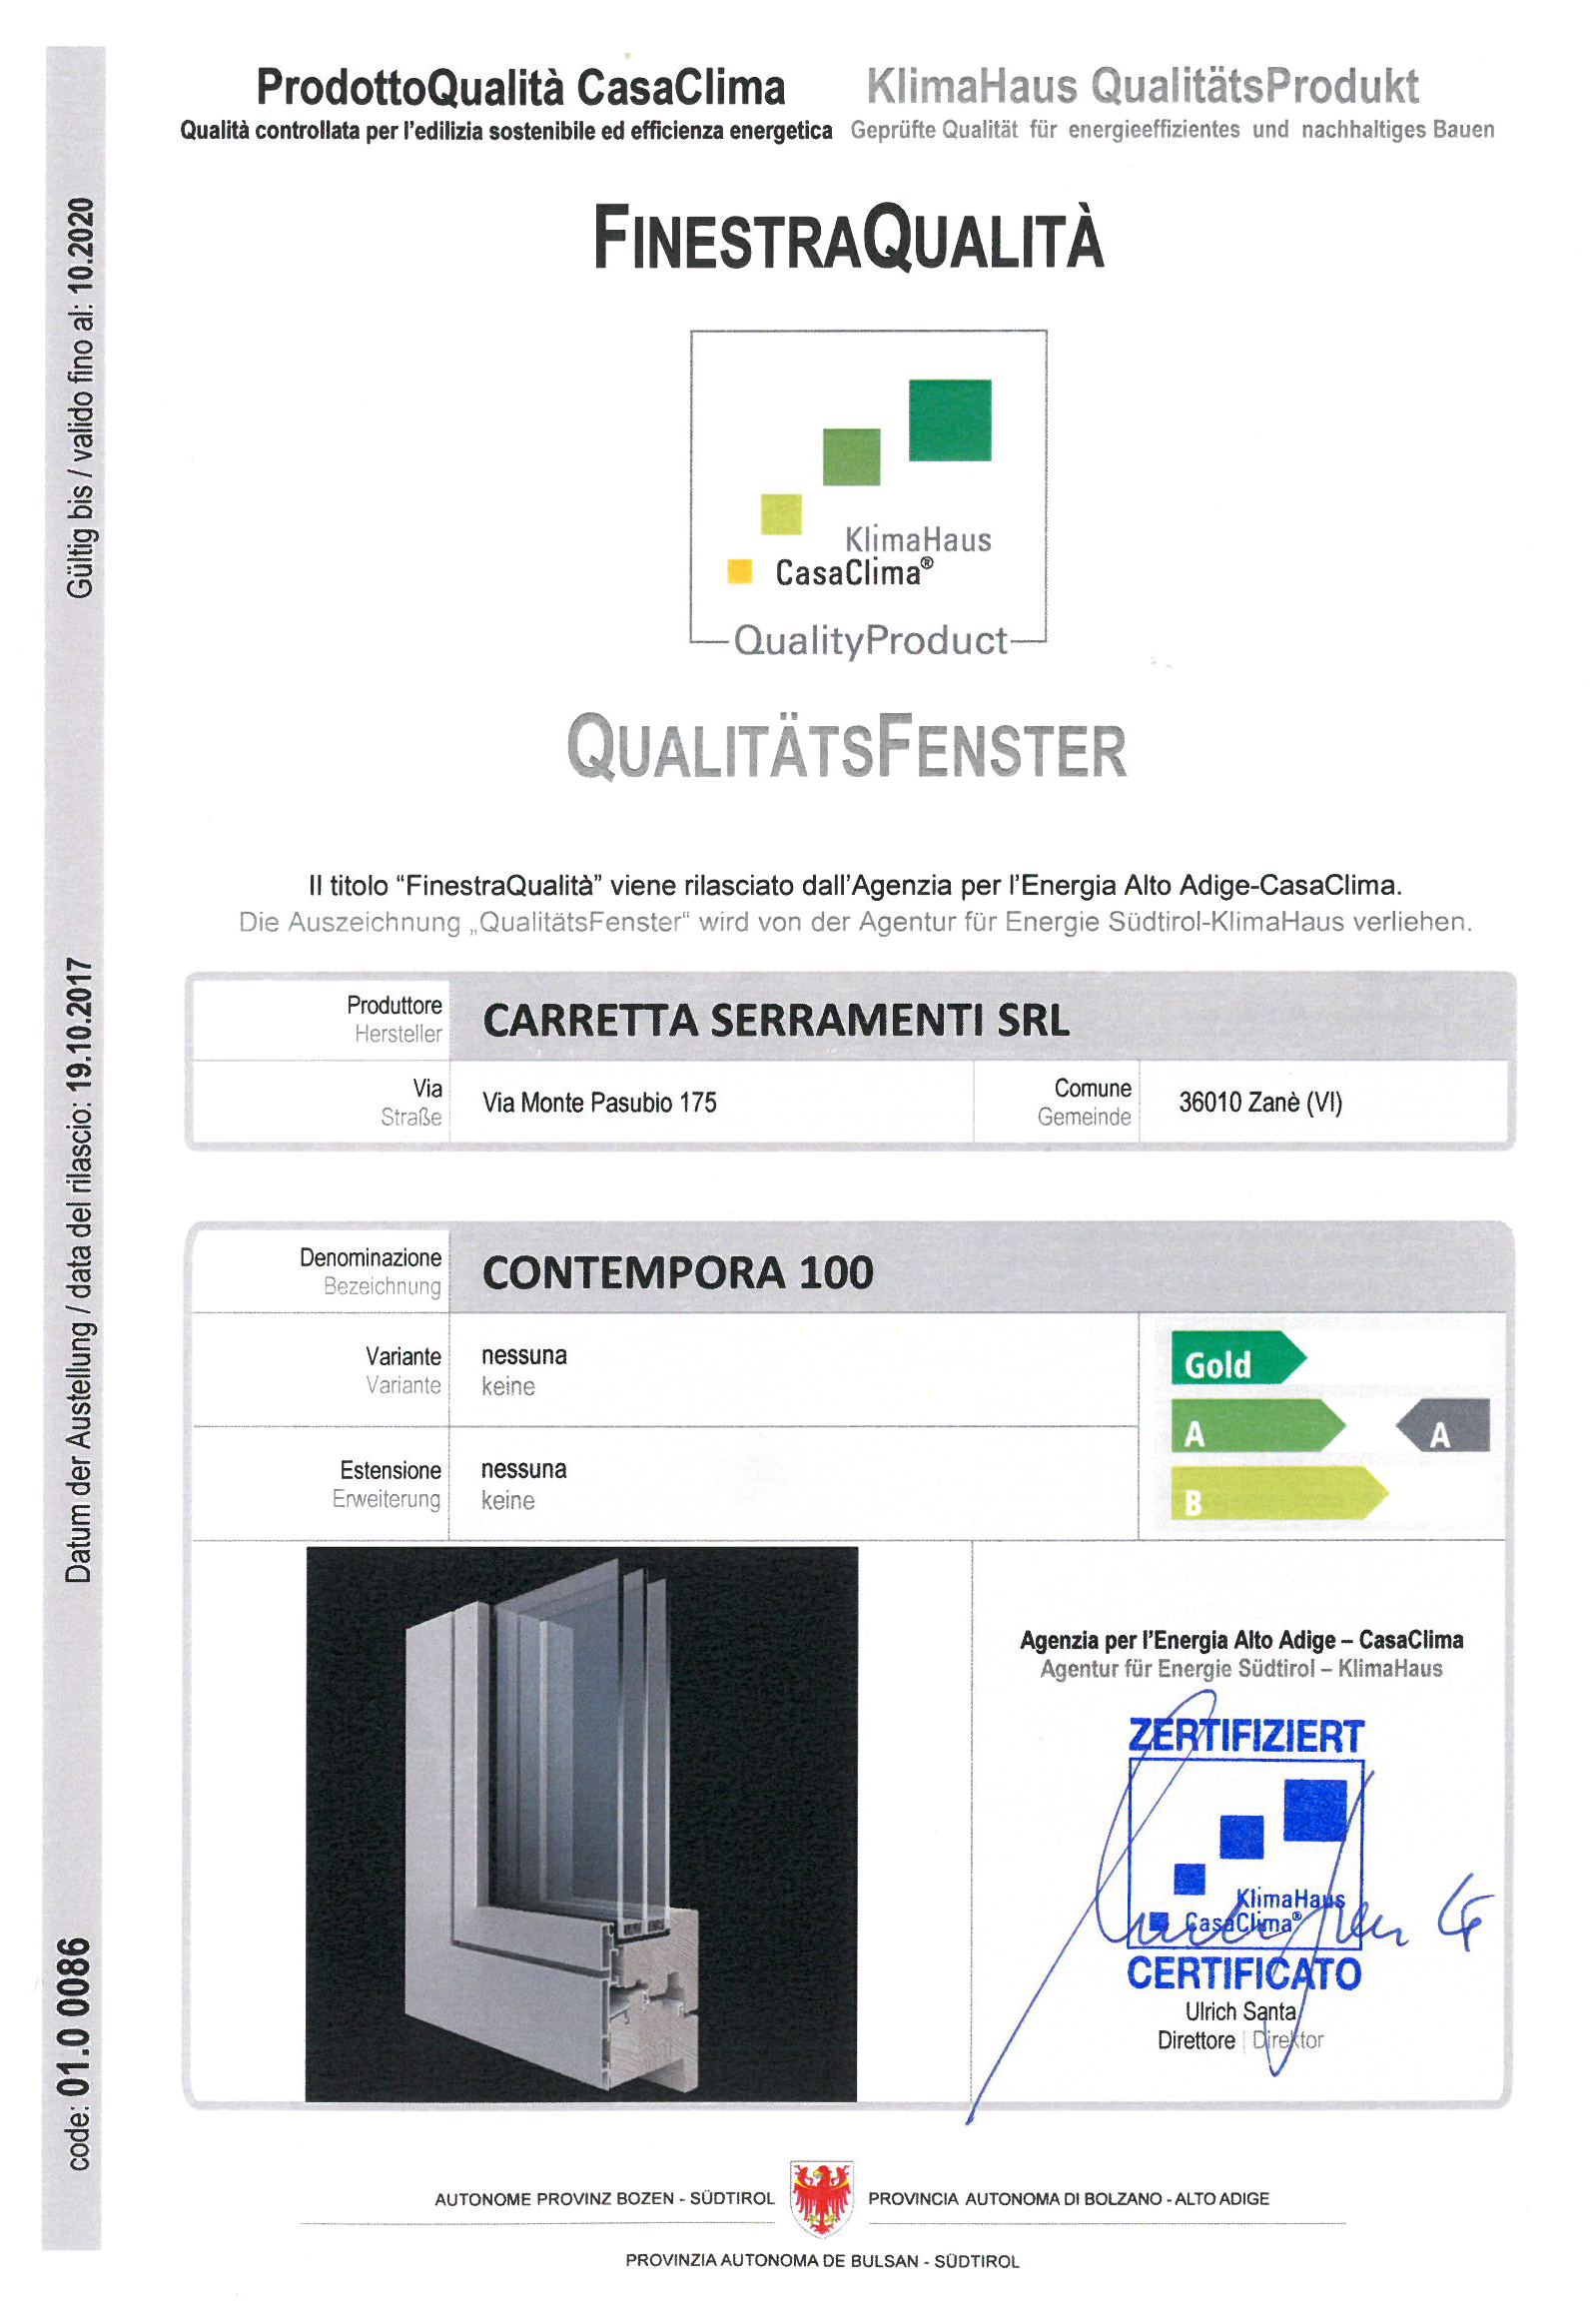 Carretta Serramenti produzione finestre in legno e alluminio Contempora 100 Certificato Qualità CasaClima KlimaHaus